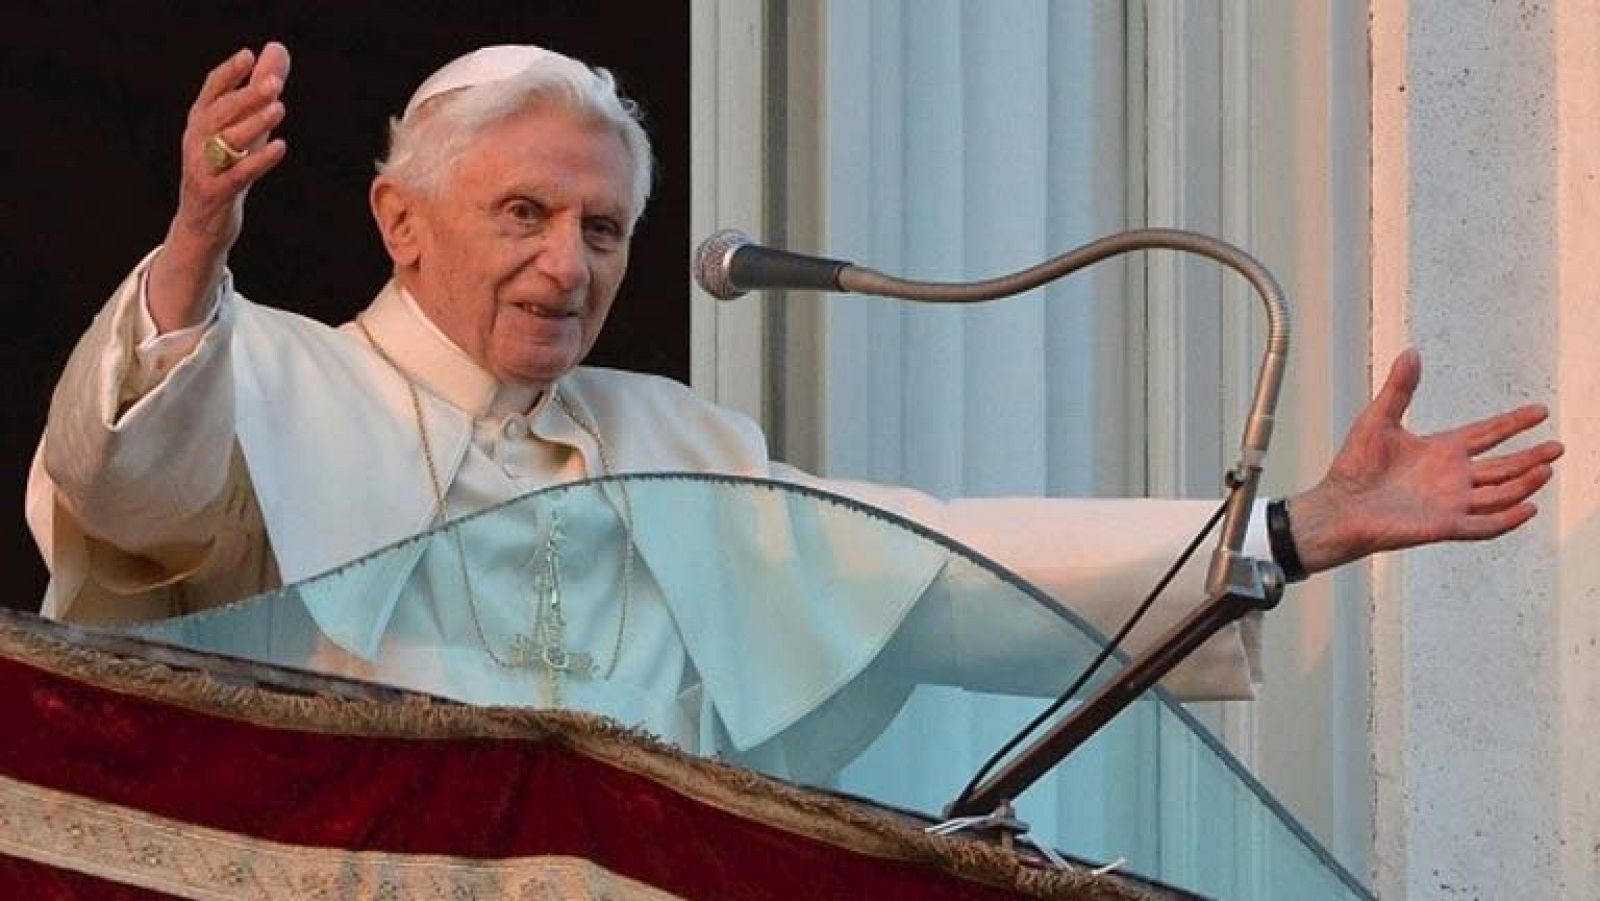 El papa da las gracias "de corazón" antes de retirarse en Castelgandolfo